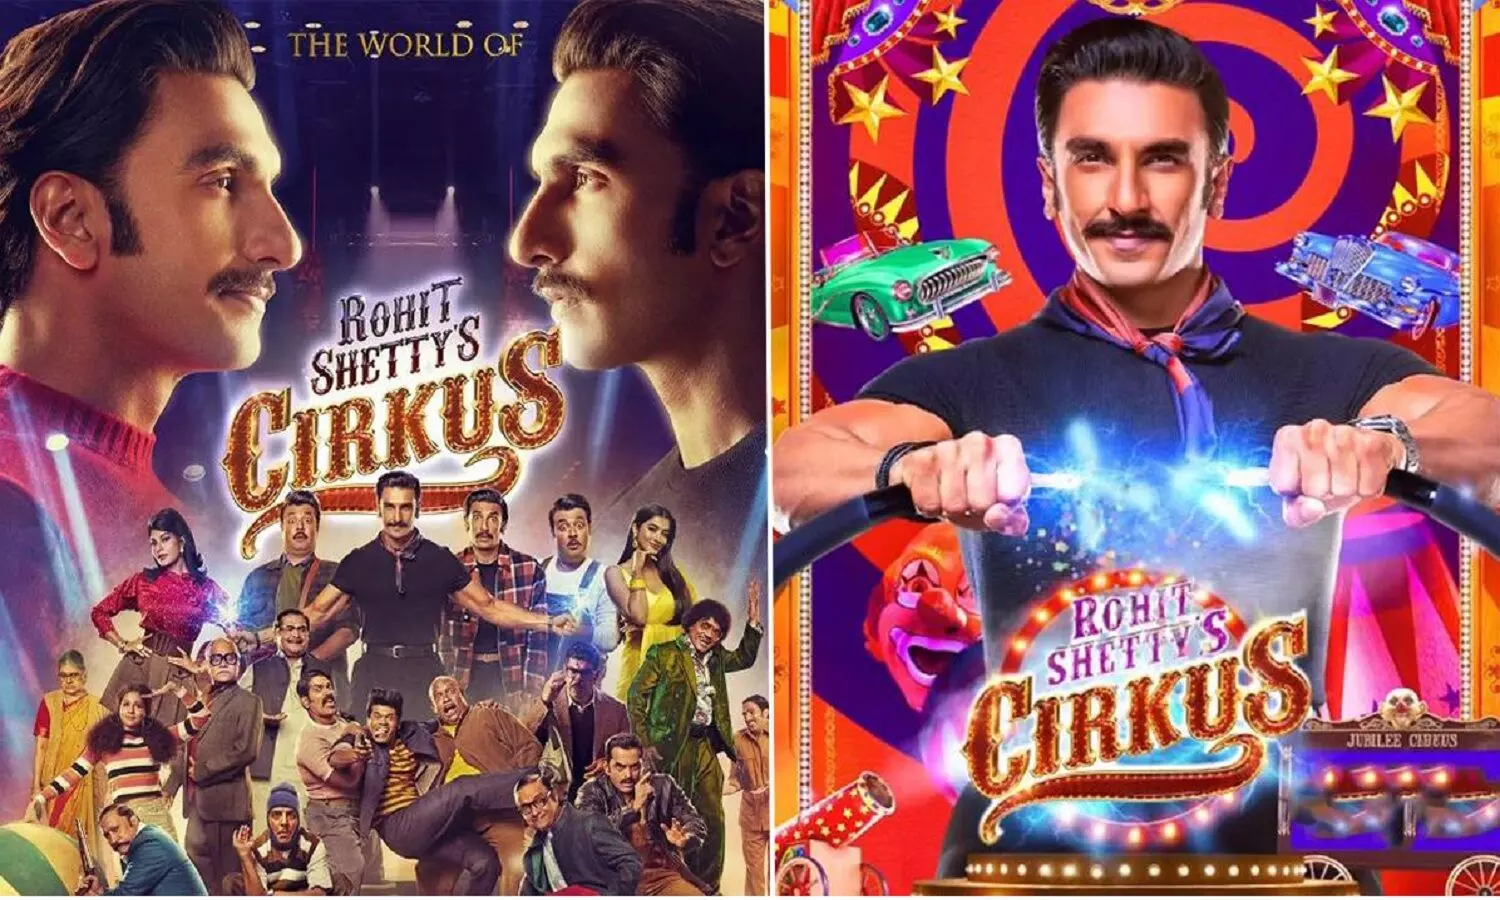 Cirkus Teaser Review: रणवीर सिंह की डबल रोल वाली कॉमेडी फिल्म सर्कस का टीजर देख लीजिये